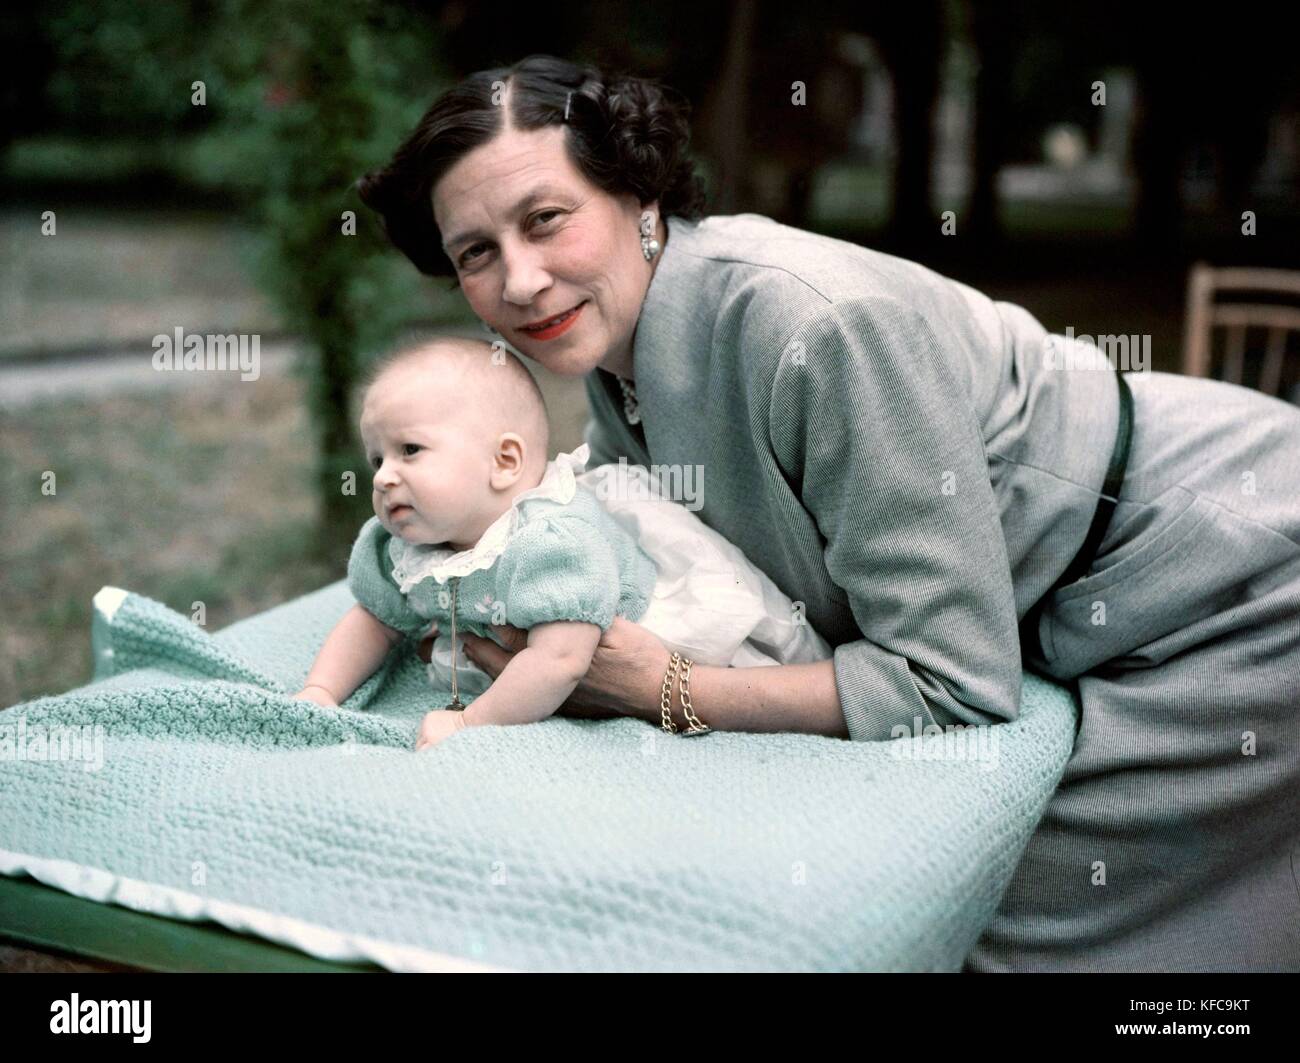 La principessa Eugenie della Grecia (1910-1989) e suo figlio Principe Charles-Alexander di Tour e Taxi 1953 Taponier Photo12.com foto - Coll. Taponier Foto Stock